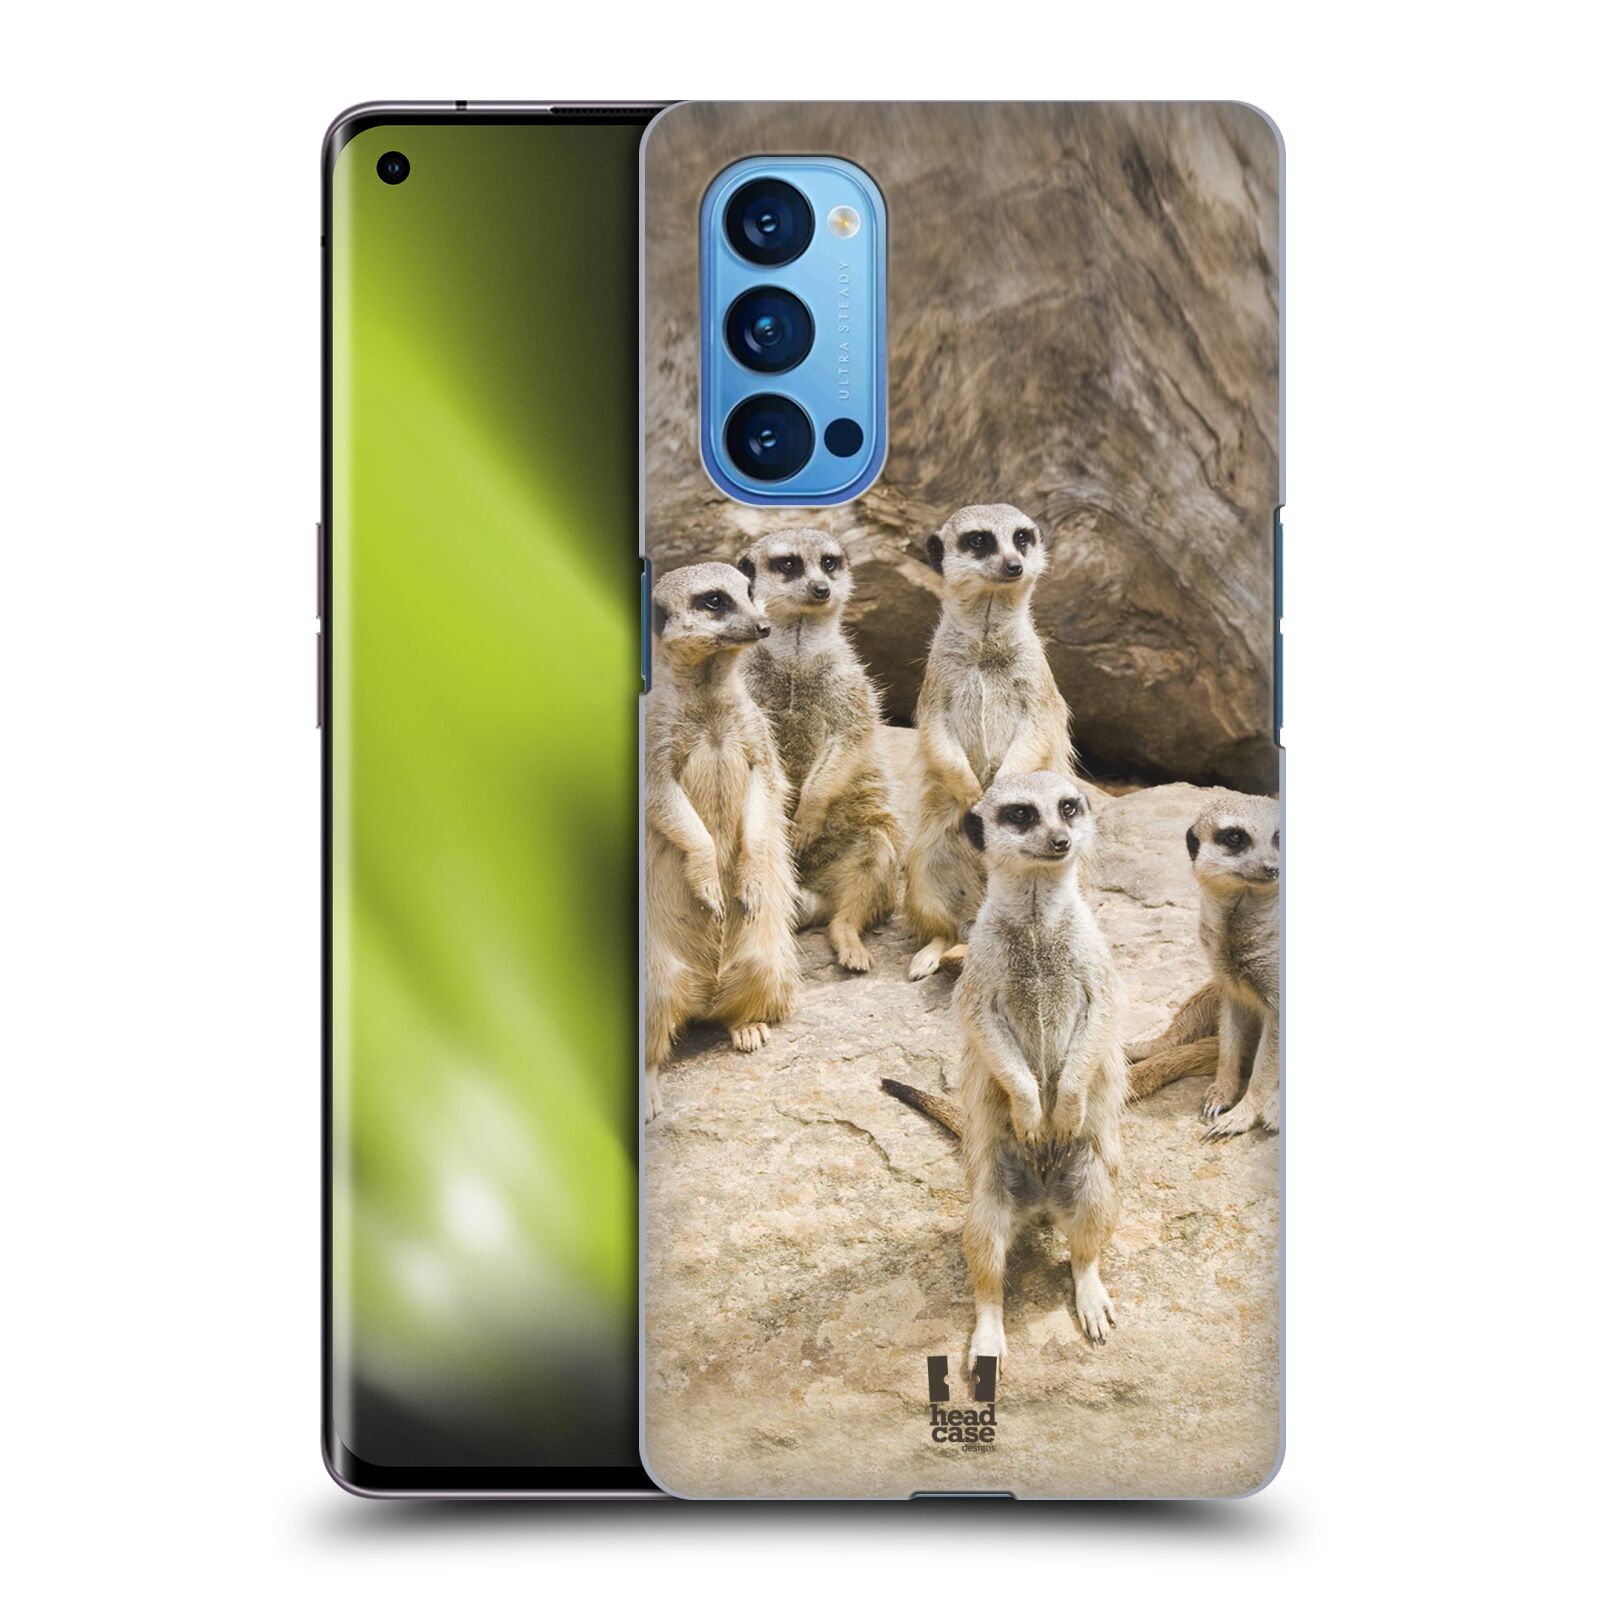 Zadní obal pro mobil Oppo Reno 4 PRO 5G - HEAD CASE - Svět zvířat roztomilé surikaty